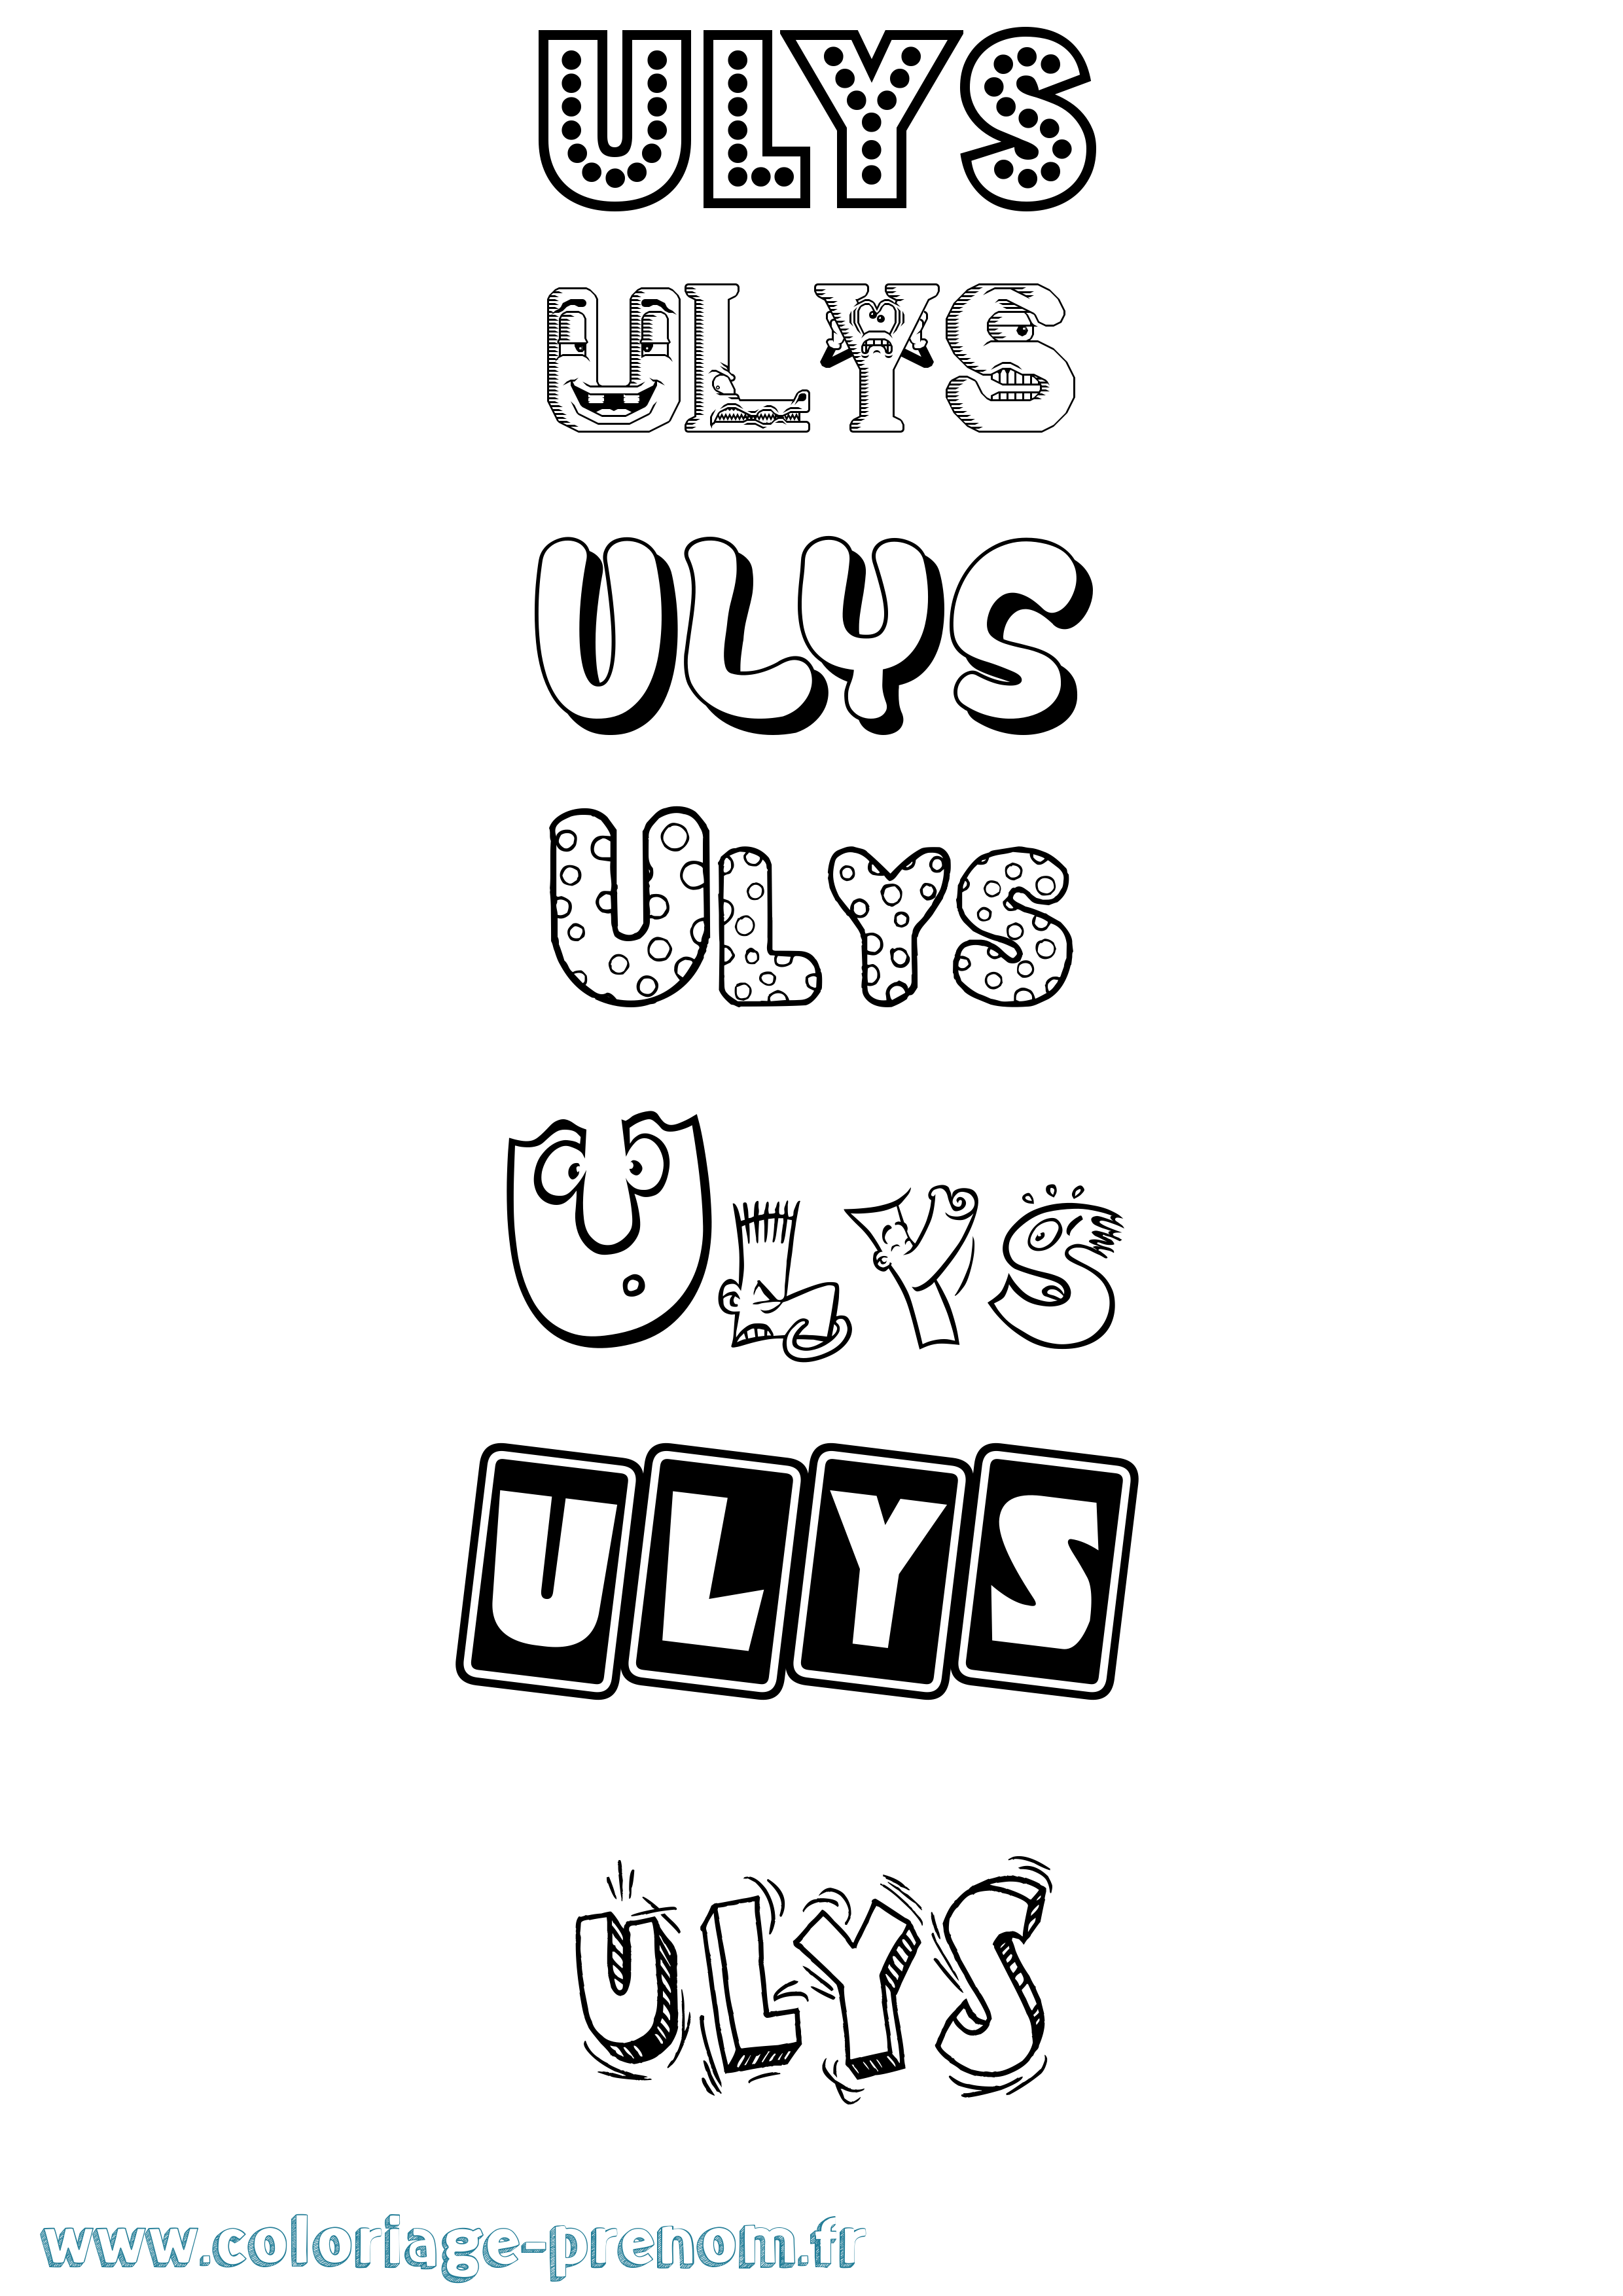 Coloriage prénom Ulys Fun